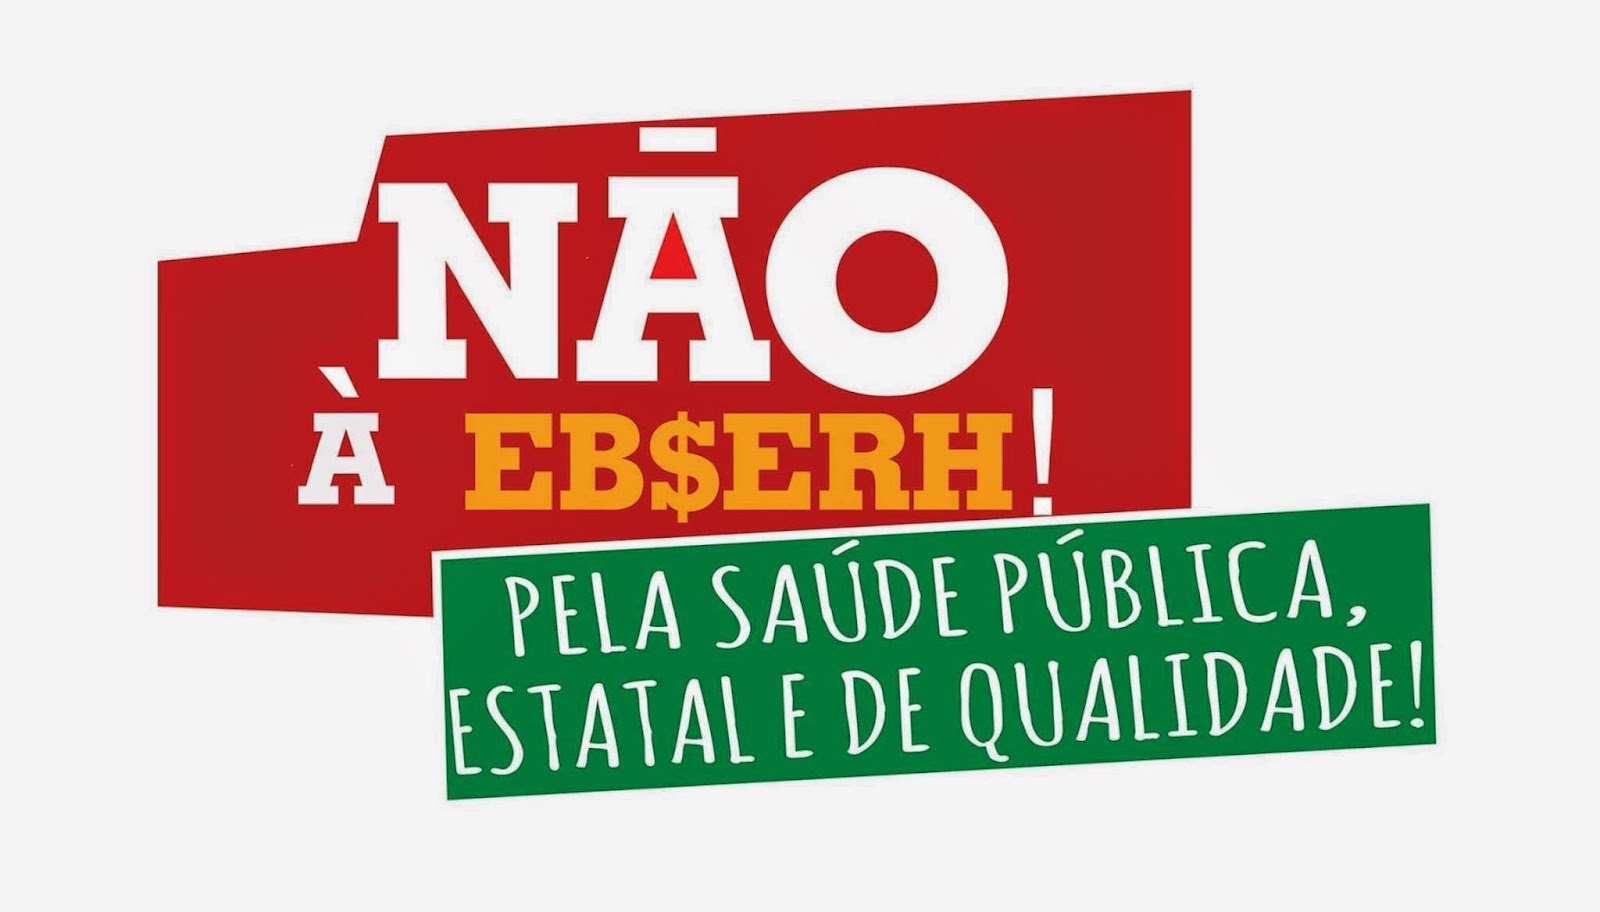 UFSC rechaça a EBSERH em plebiscito inédito!